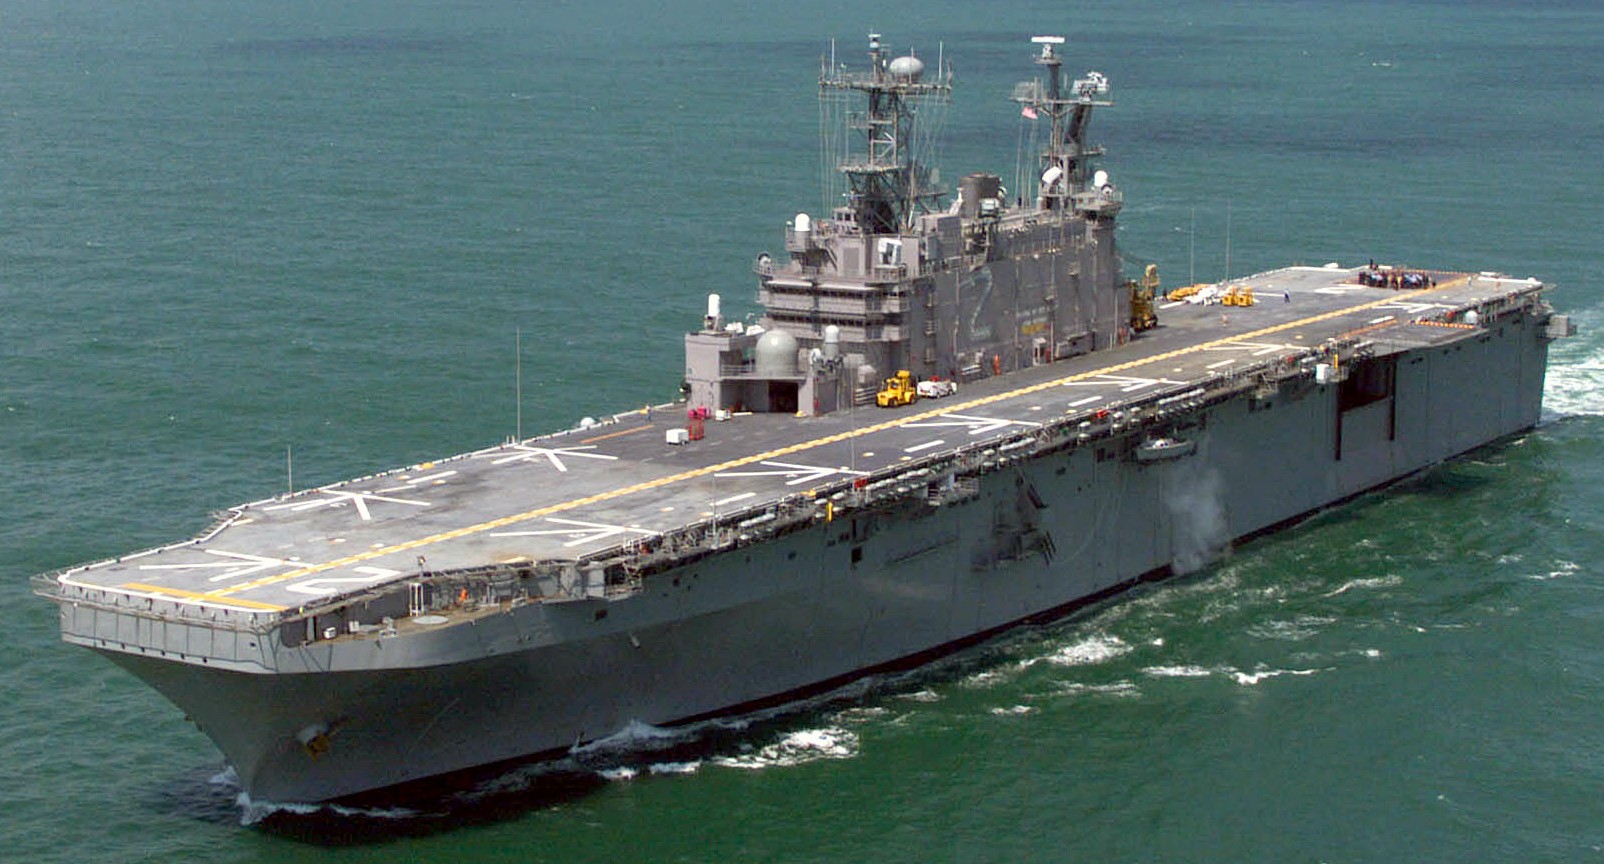 lha-2 uss saipan tarawa class amphibious assault ship us navy 04